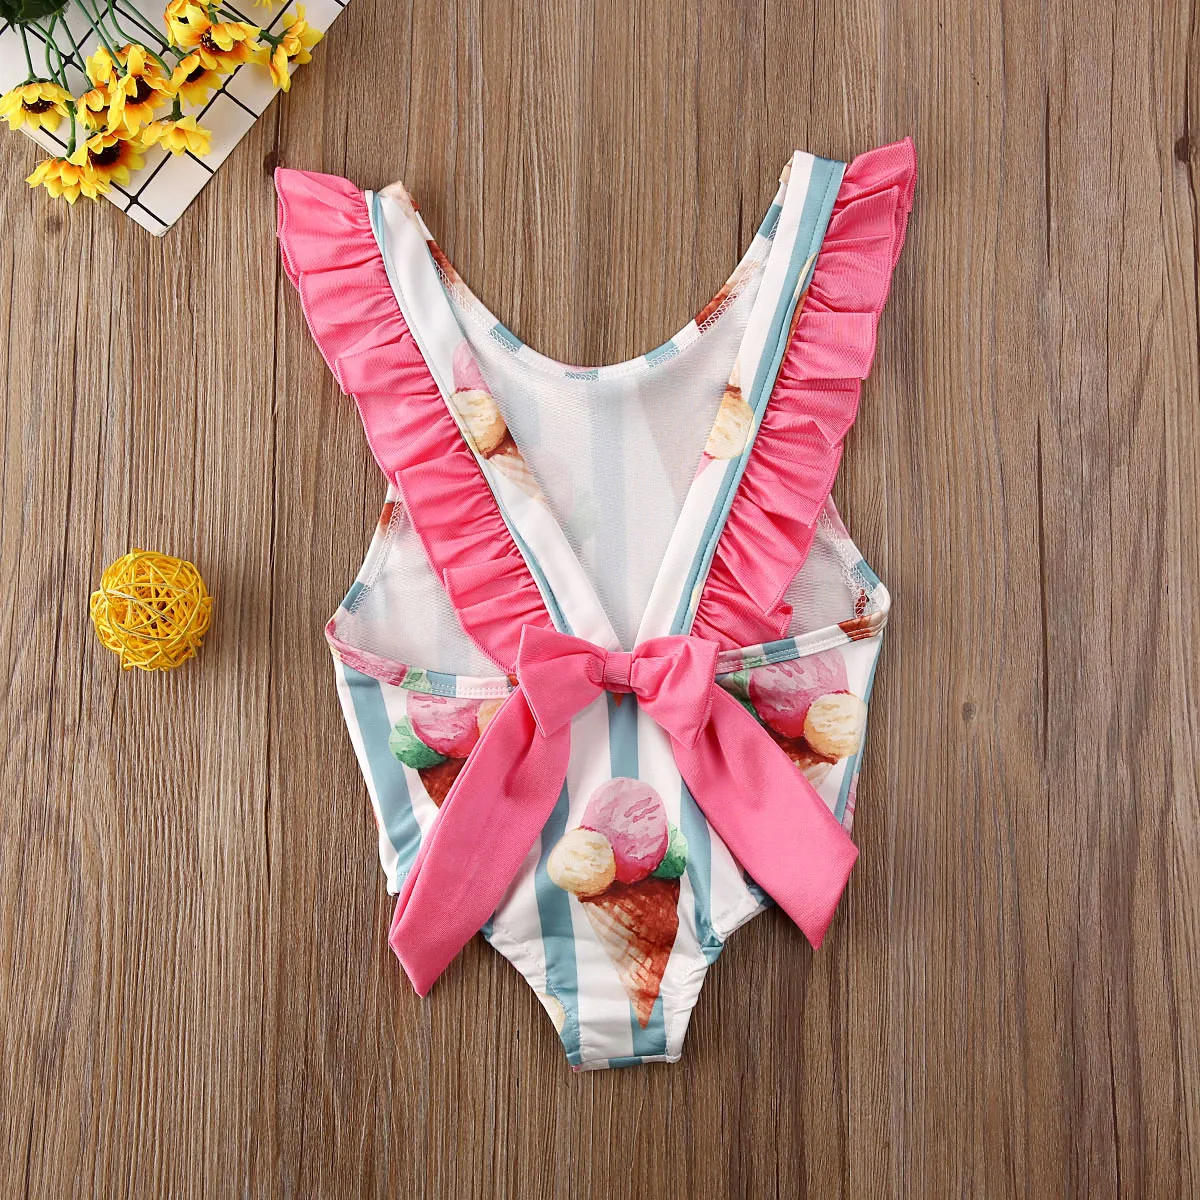 Модный летний хлопковый полосатый купальник купальный костюм для маленьких девочек купальный костюм бикини